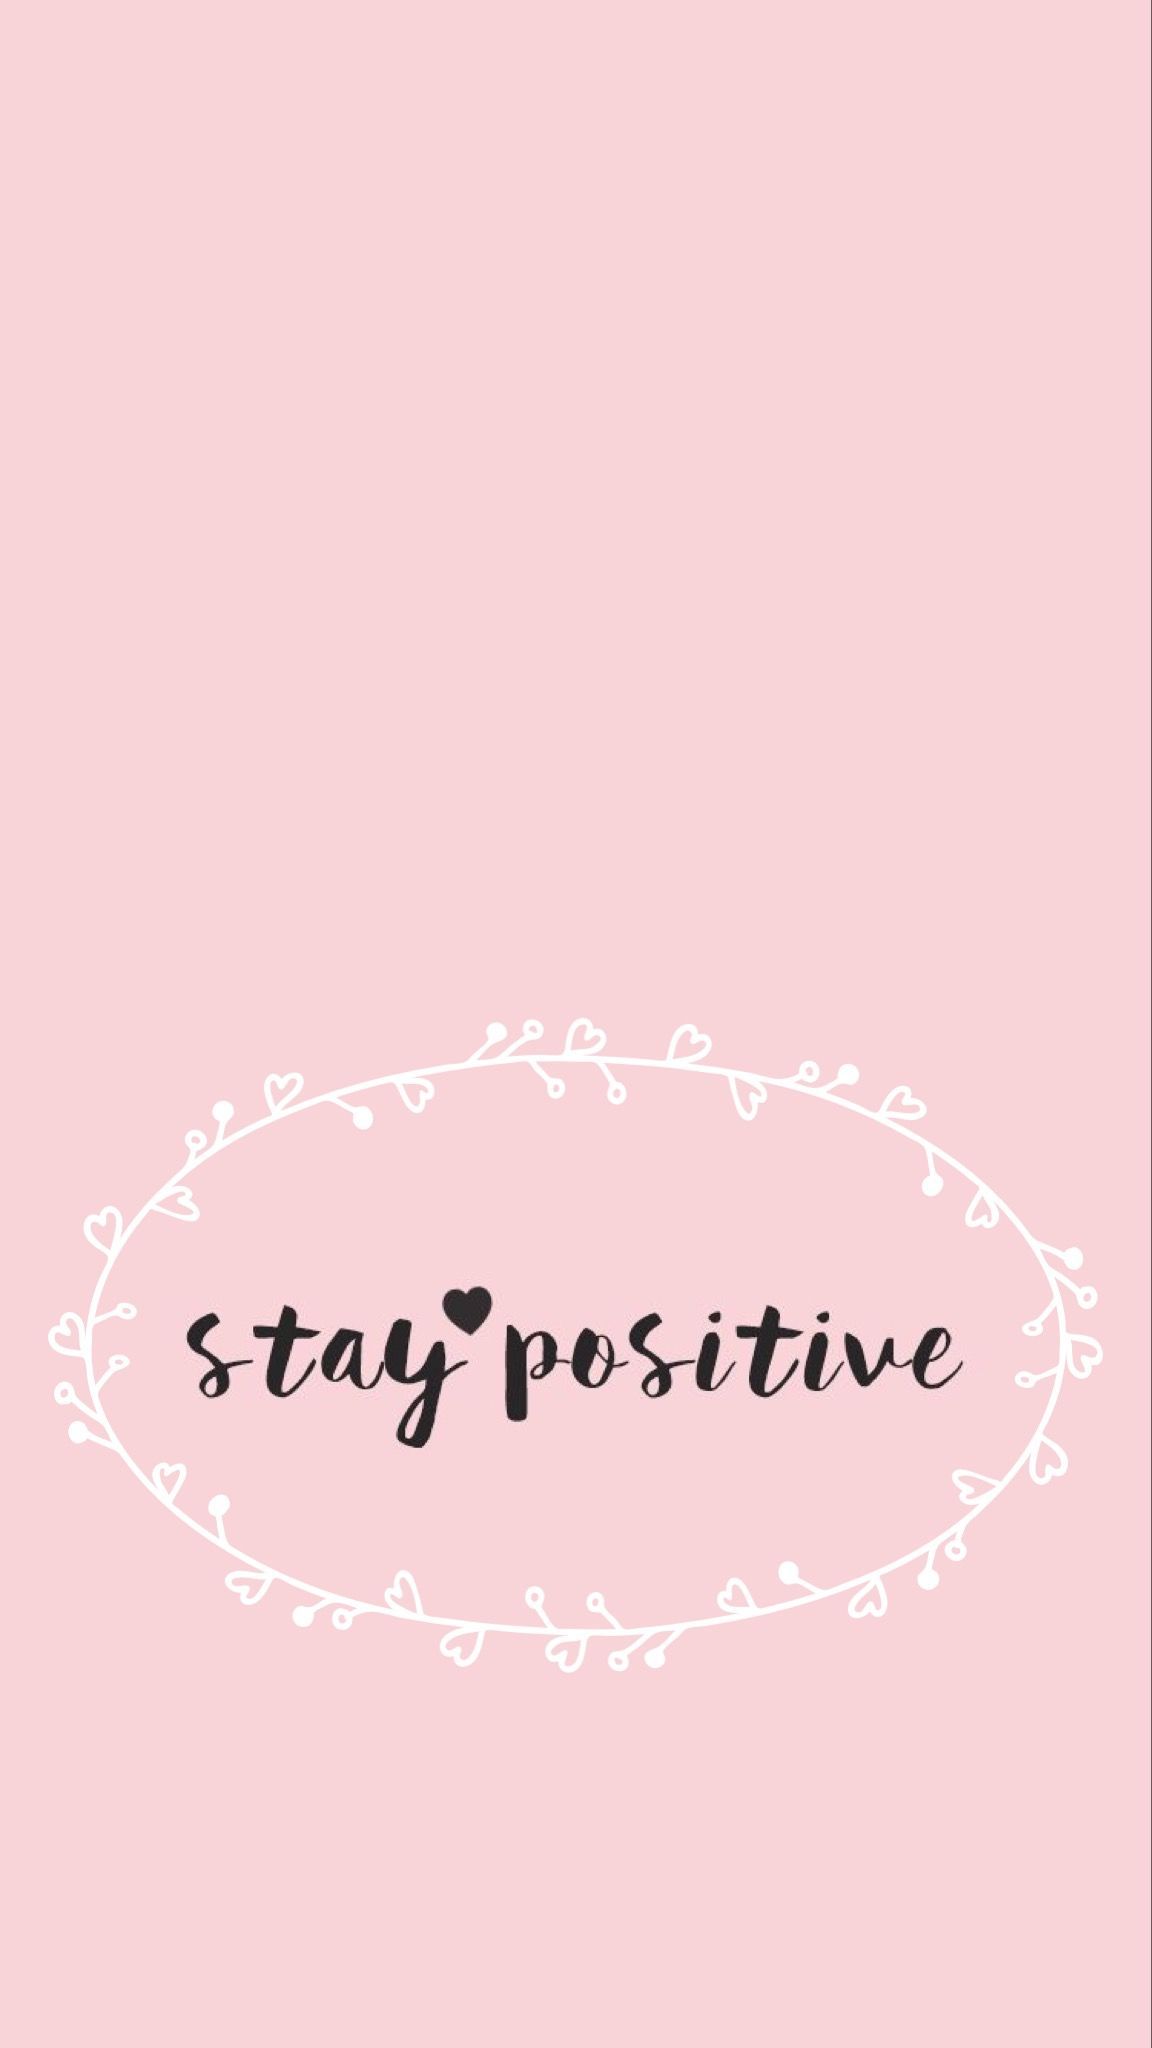 Positivity Wallpaper